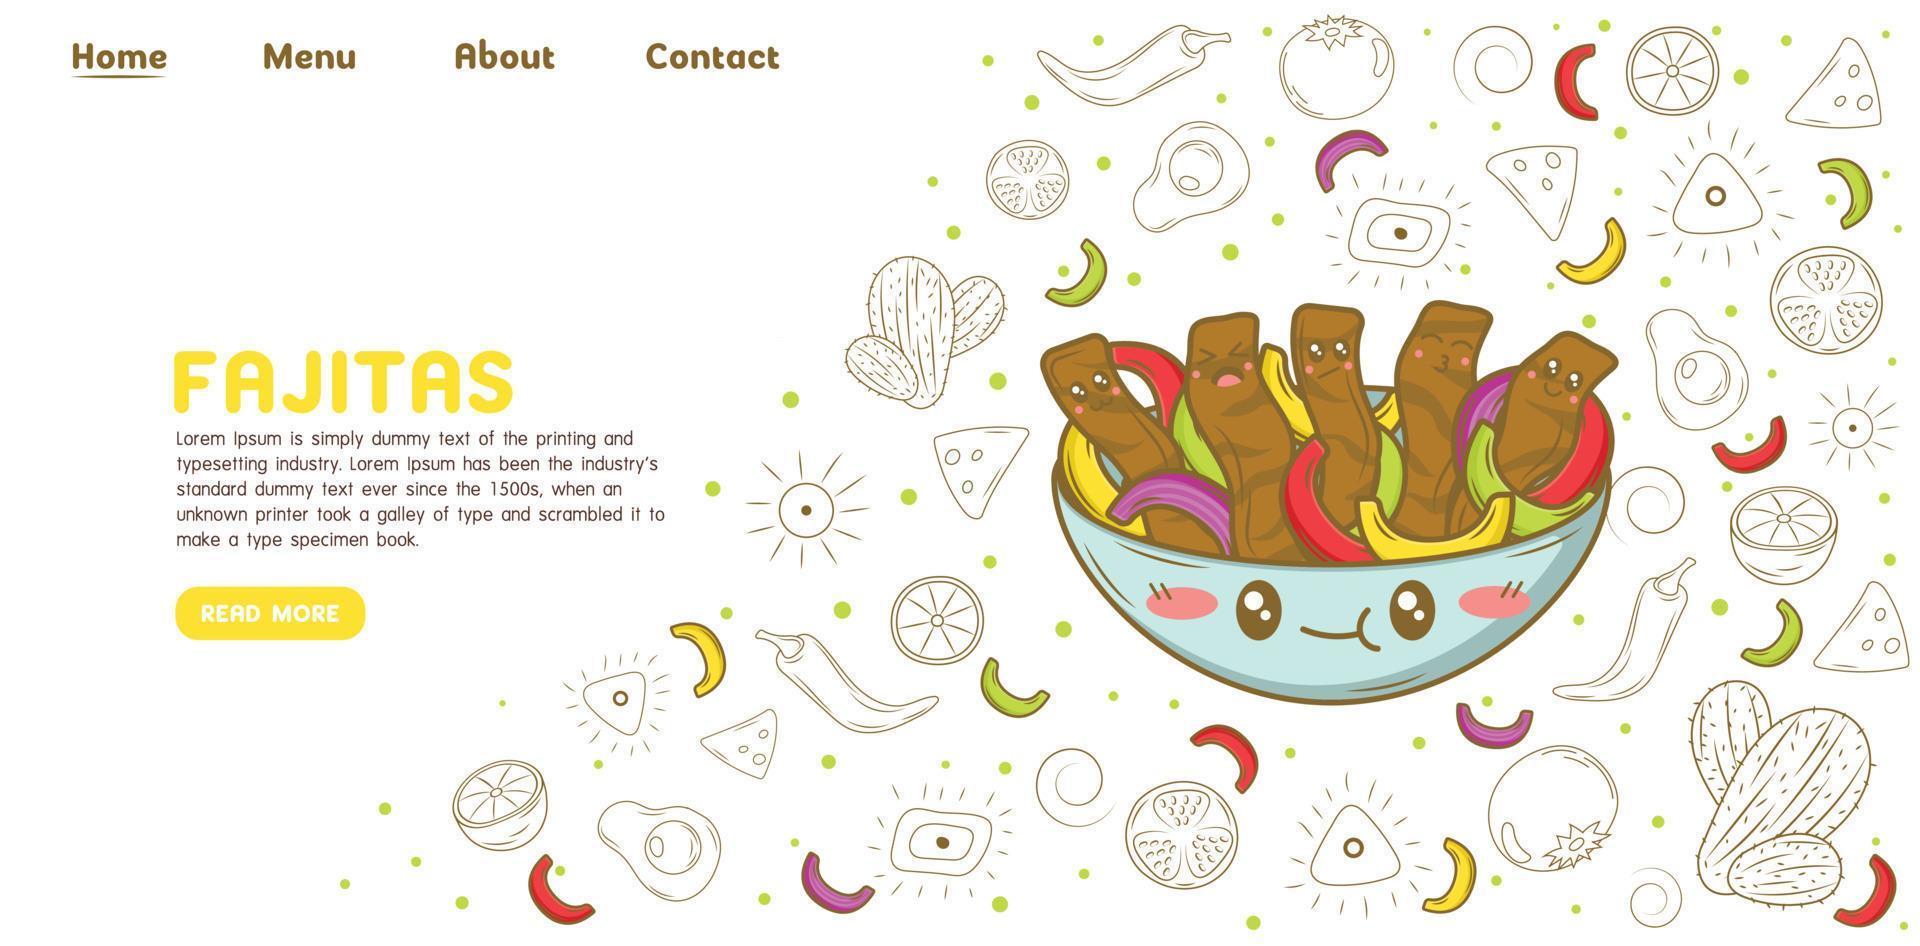 modèle de site web de page de destination de fajitas de cuisine mexicaine avec des éléments de dessin animé de doodle vecteur